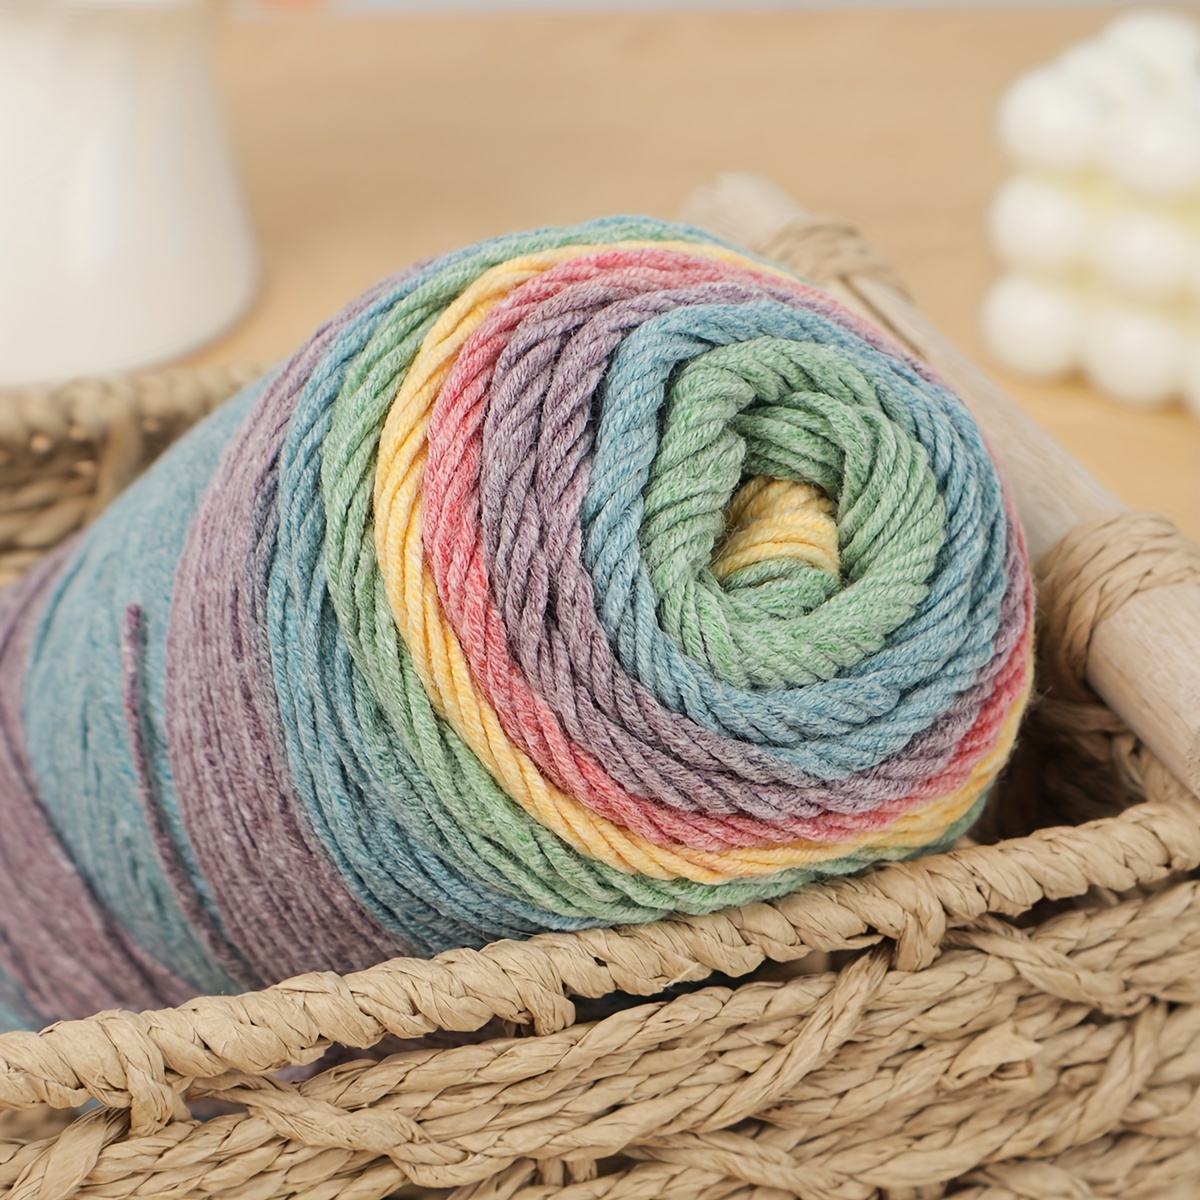 Buy 2 Skeins Rainbow Soft Yarn 100% Wool Gradient Multi Color Yarn